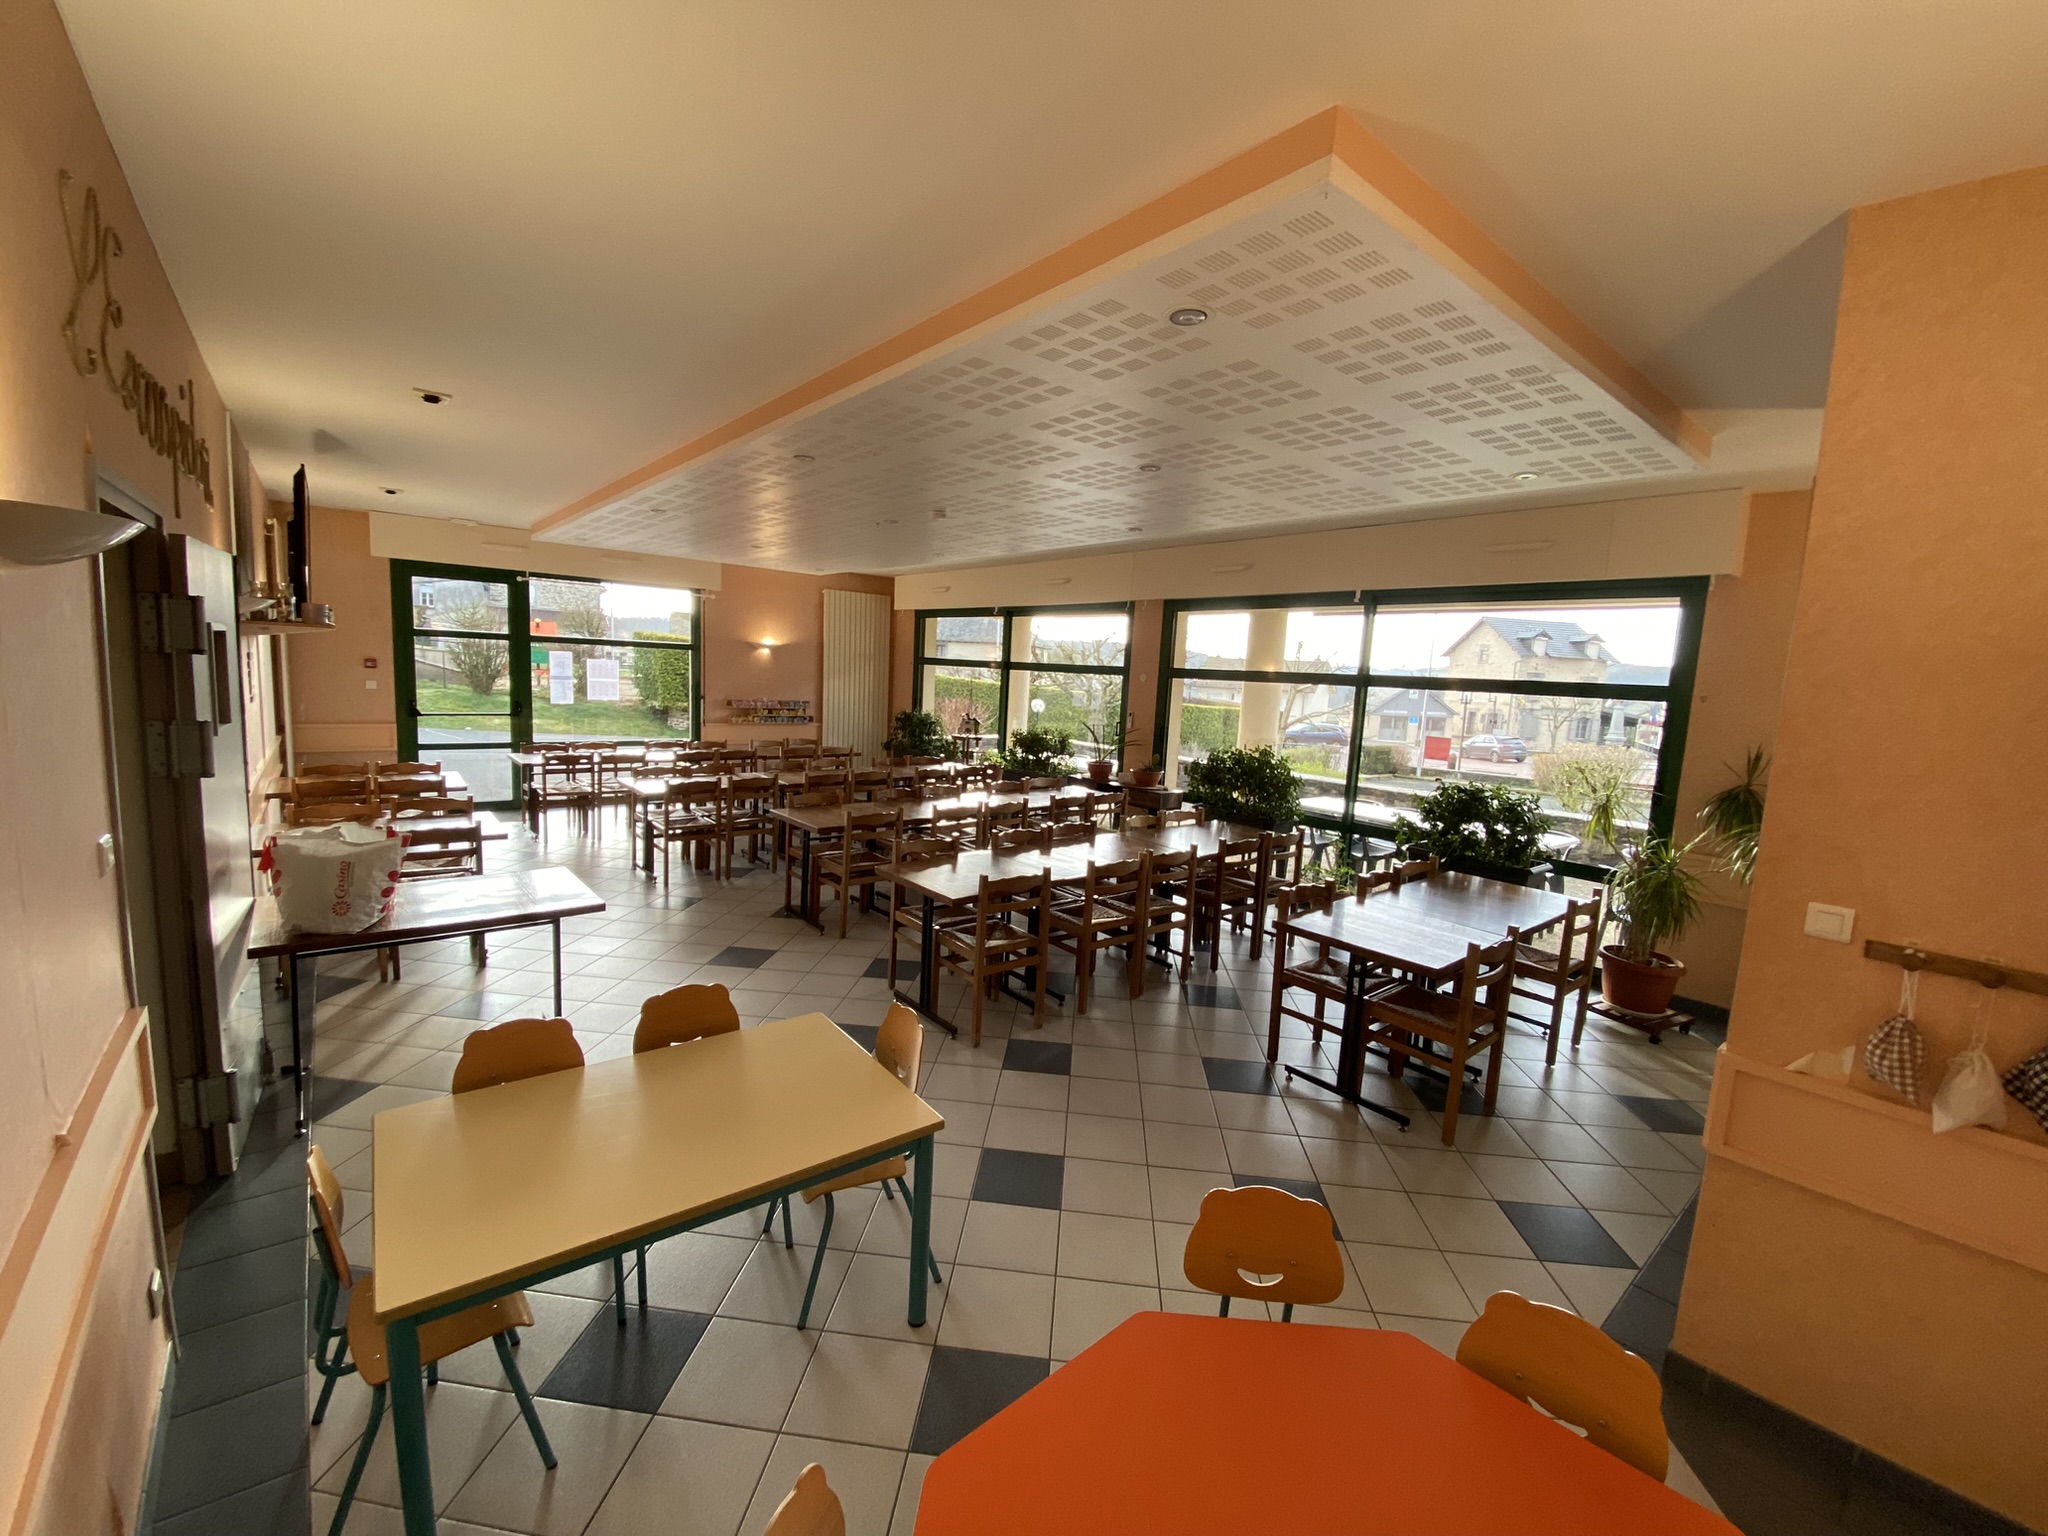 A compter du 1er septembre 2024, la commune de Prunet (Cantal, à 10 km au sud d’Aurillac), met en location-gérance son bar restaurant "L’Escarpidou", situé au cœur du bourg et à proximité de l’école.
Le commerce d’une capacité de 80 couverts se compose :
   - d’une cuisine avec espace séparé lavage et stockage ;
   - d’une partie bar ;
   - d’une salle de restaurant ;
   - d’une terrasse.
L’ensemble est entièrement équipé (mobilier et vaisselle) et en parfait état de fonctionnement. Aucun investissement complémentaire, ni travaux à prévoir.
Le commerce, conforme aux normes PMR, est accompagné d’un appartement type T3 non meublé de 65 m2.
L’établissement est en charge de la cantine scolaire pour un prévisionnel d’une cinquantaine d’enfants à la rentrée 2024.
Loyers :
   - Commerce : 750 € HT par mois (3 mois de caution demandée)
   - Appartement : 430 €, TTC par mois (1 mois de caution demandée)
Pour plus de renseignements, contactez-nous par mail à en précisant comme objet « Location gérance L’Escarpidou ».
Merci d'envoyer votre dossier de candidature (motivations, projet, ...) à la mairie de Prunet, 1, place de la Fontaine, 15130 Prunet ou par mail.